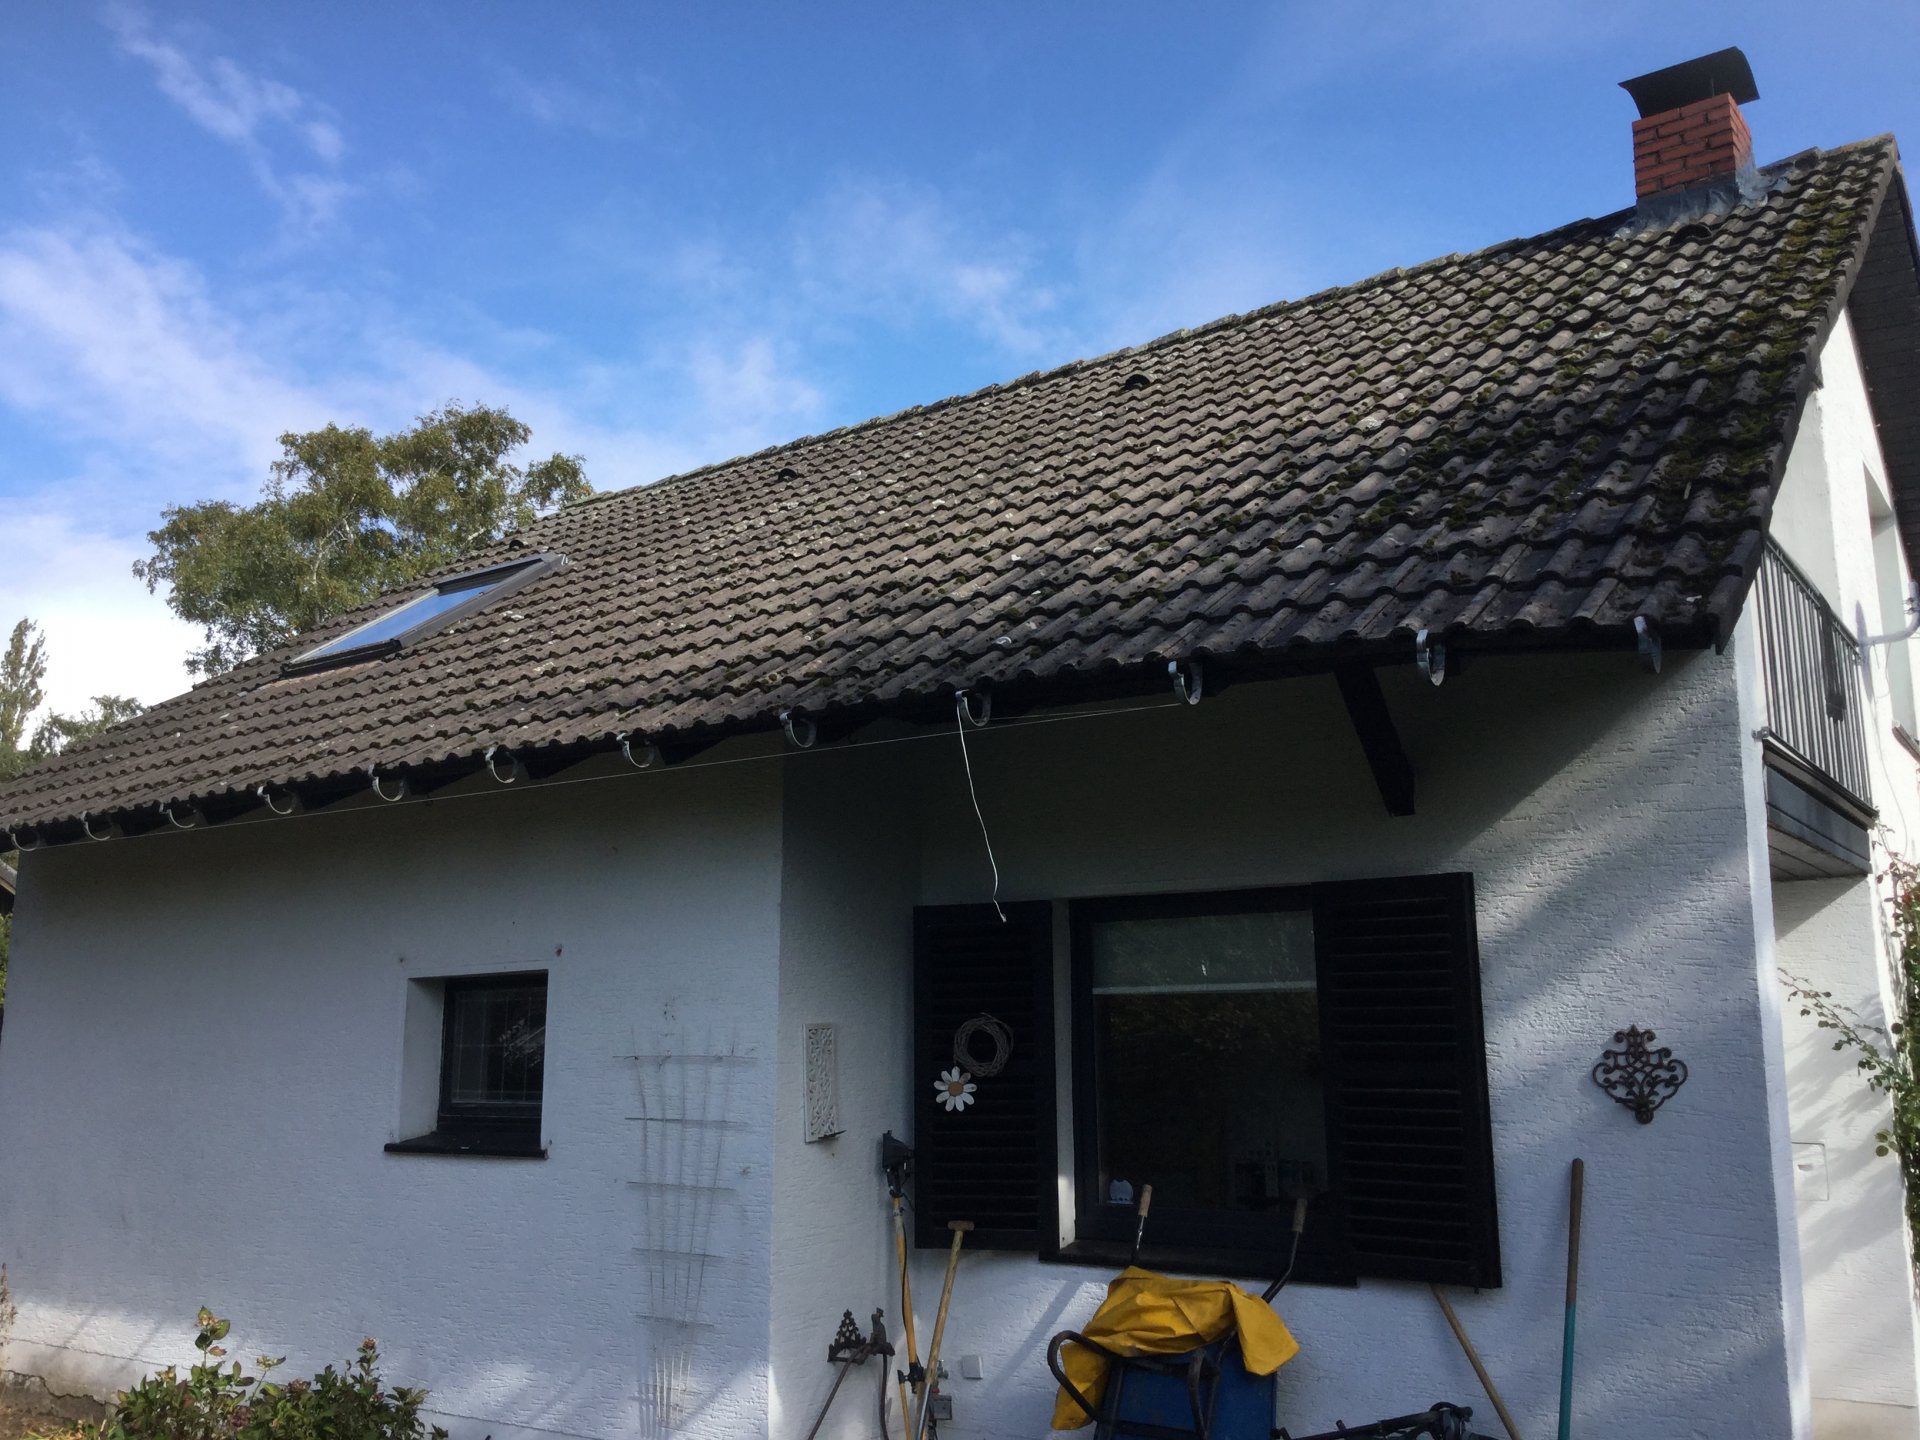 Dach hängt durch Dachlatten verstärken oder durch Stahlrohre ersetzen???